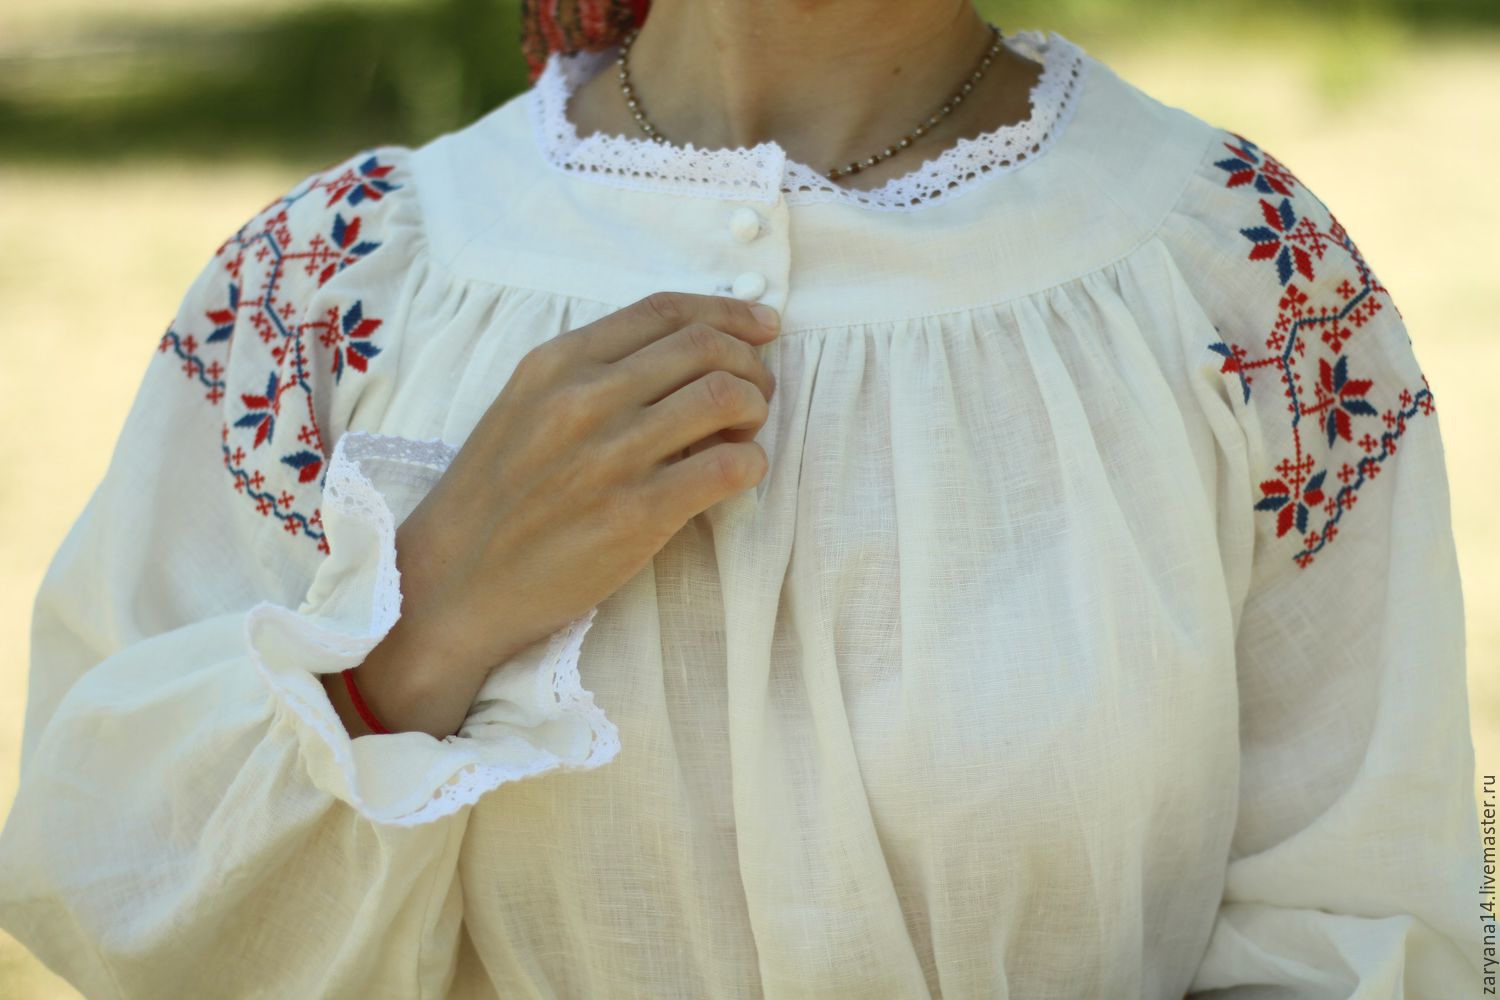 Женские русские народные рубашки